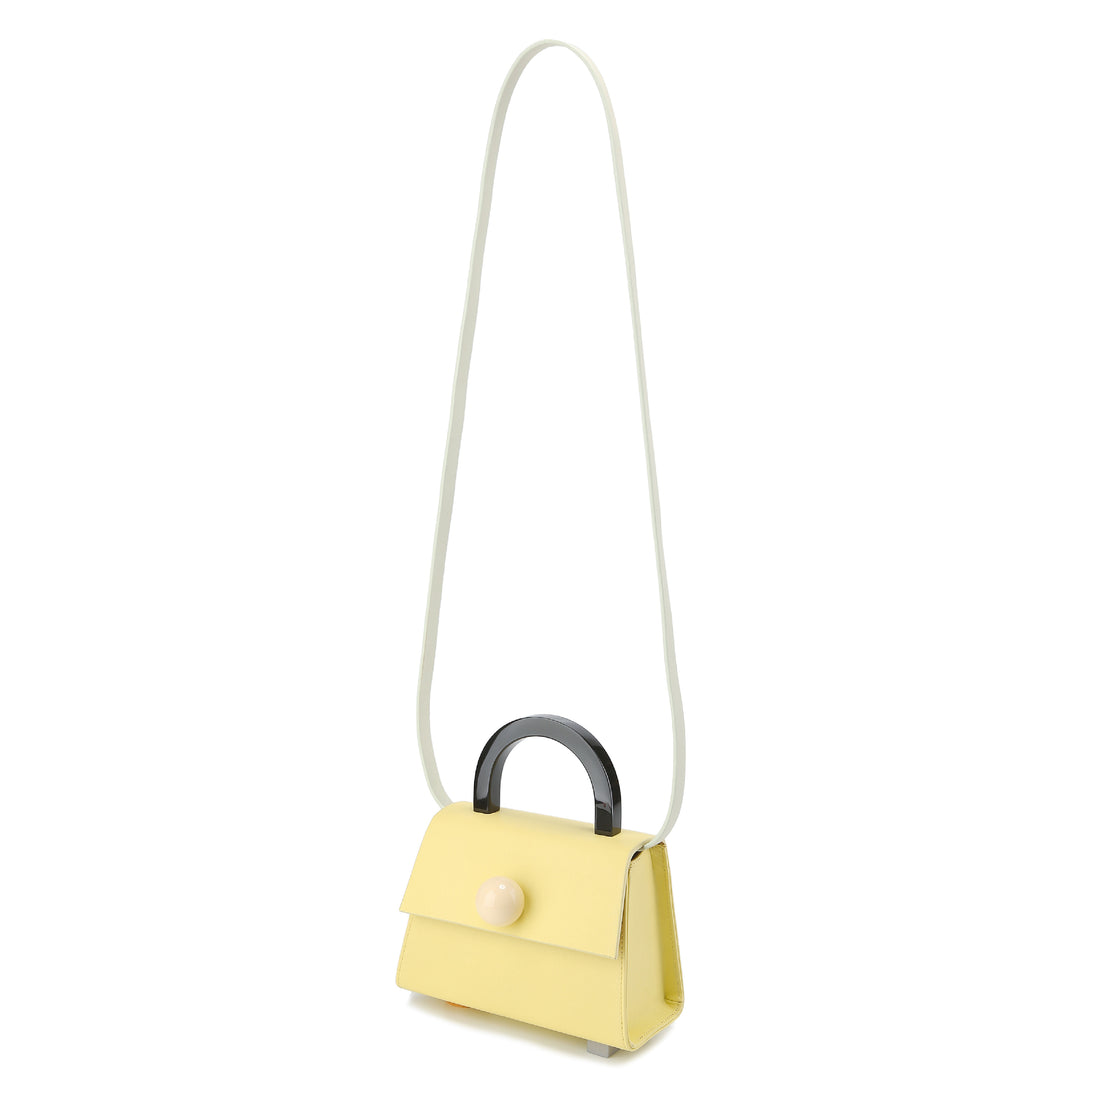 Diva satchel Bag with Strap • Lemon Sorbet